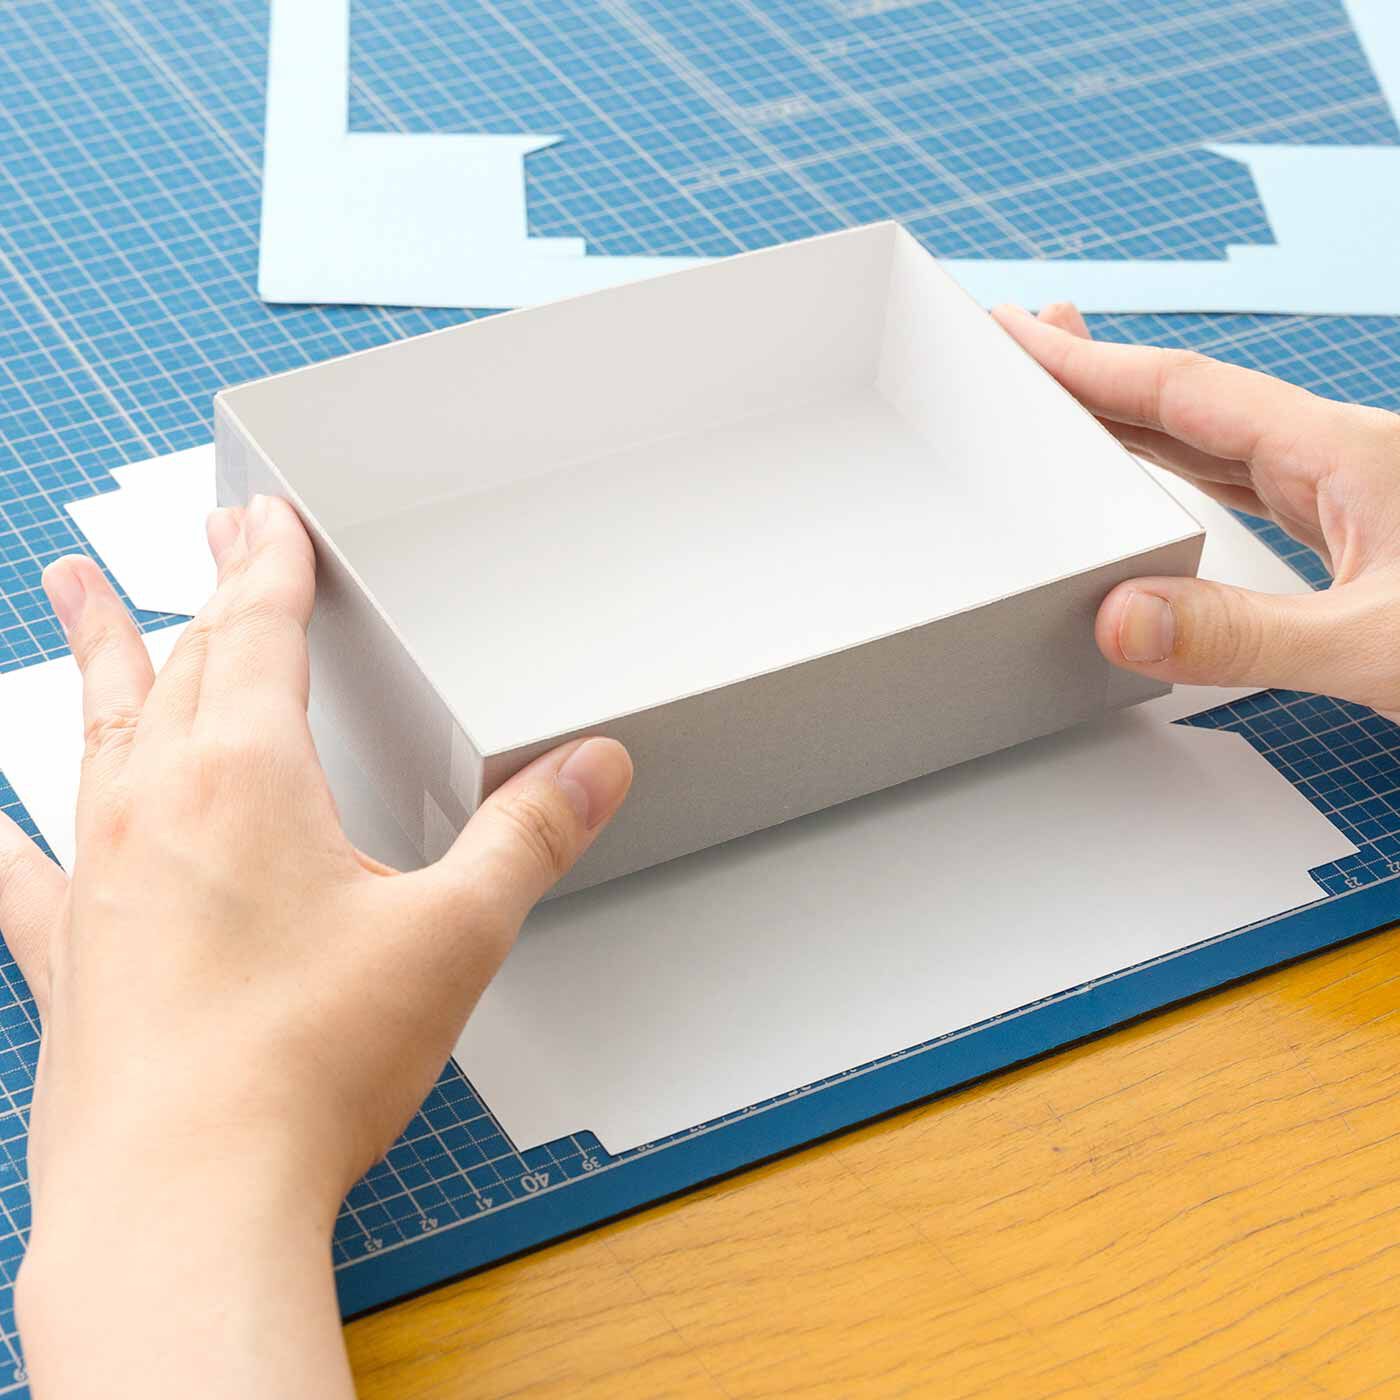 クチュリエ|かわいいデザインに心躍る はじめてでも簡単にできる紙箱づくりの会|カットした紙に組み立てた箱をゆっくりと貼り合わせていくだけ。